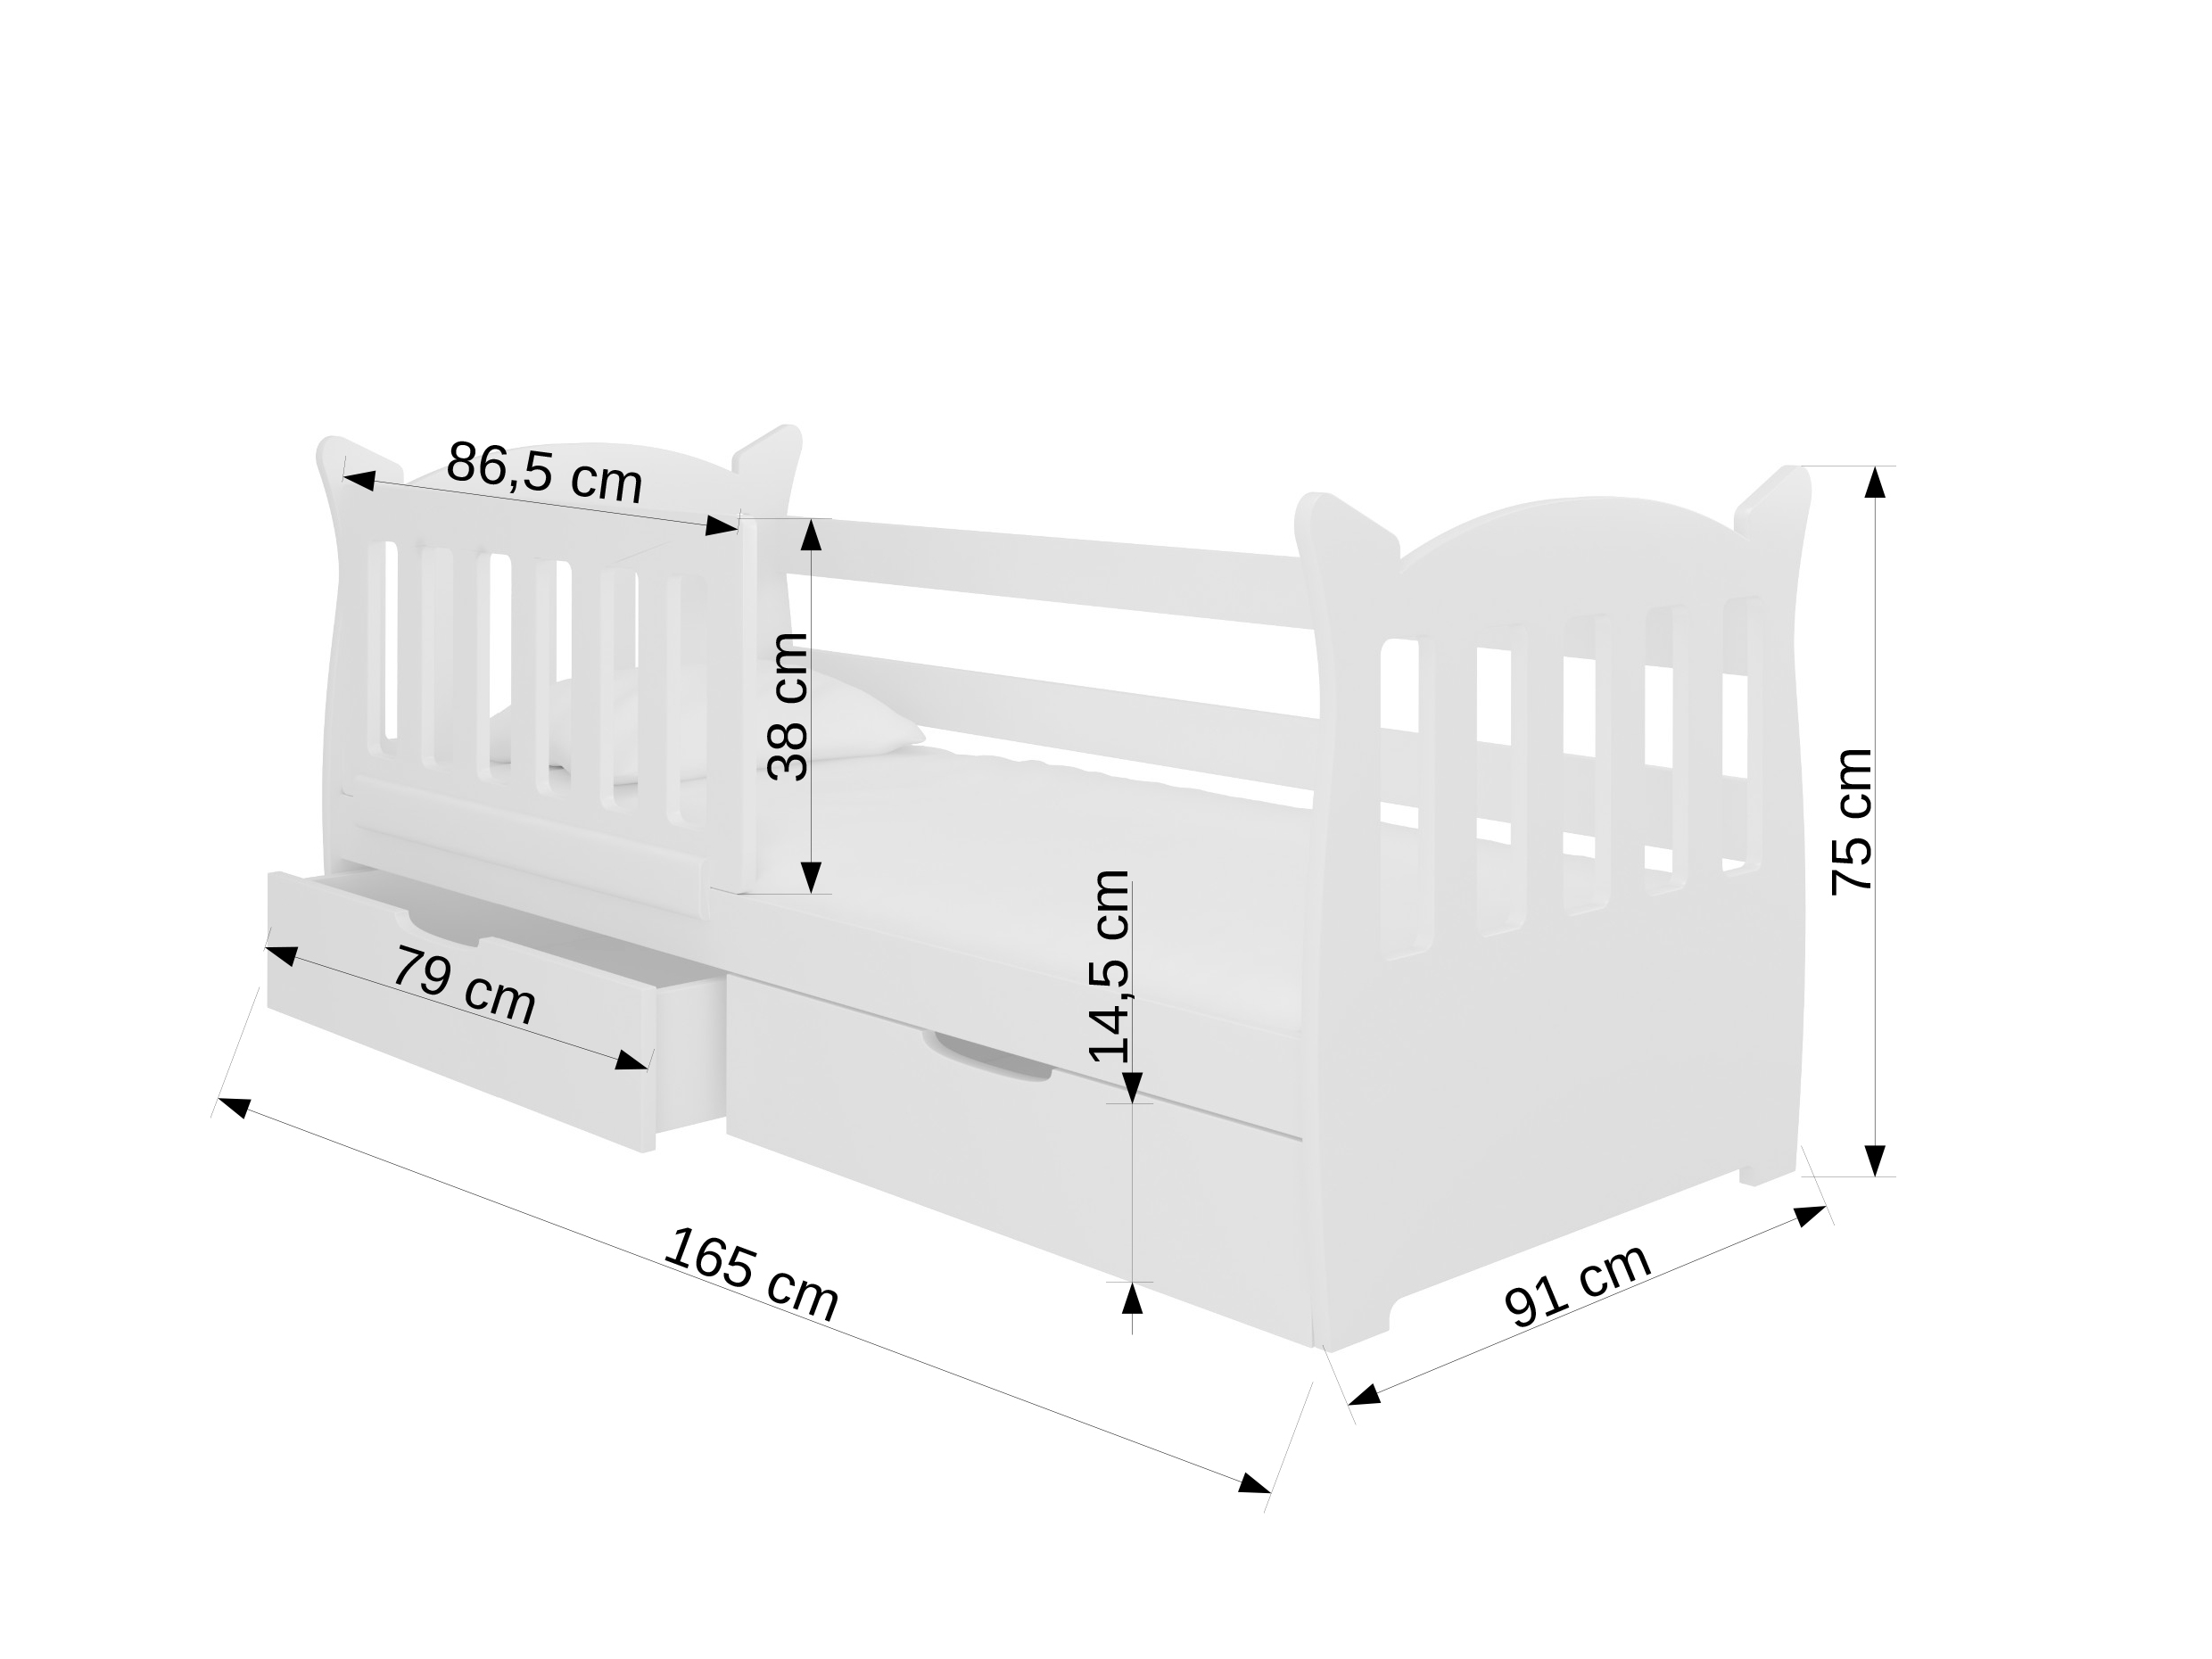 Dětská postel 160x75 cm Lenka (s roštem a matrací) (bílá + růžová)